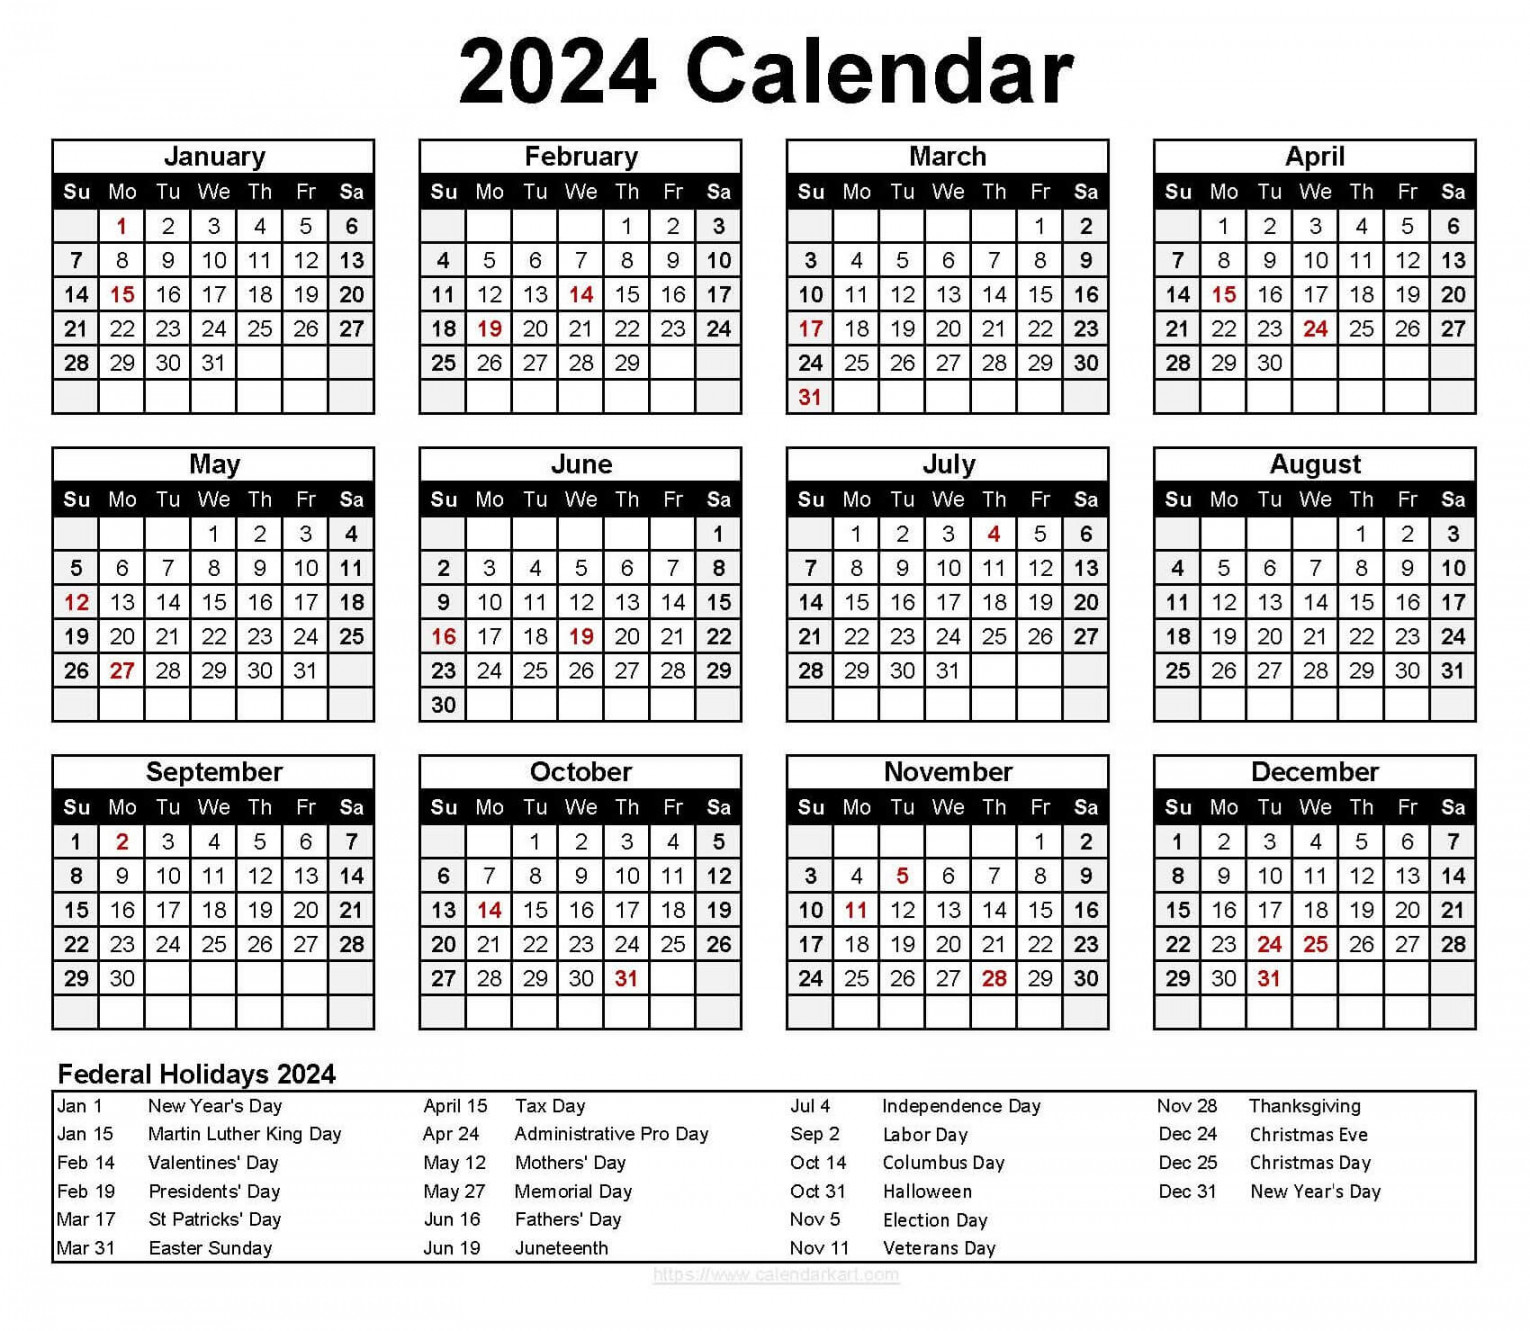 Excel Calendar Template  - CalendarKart